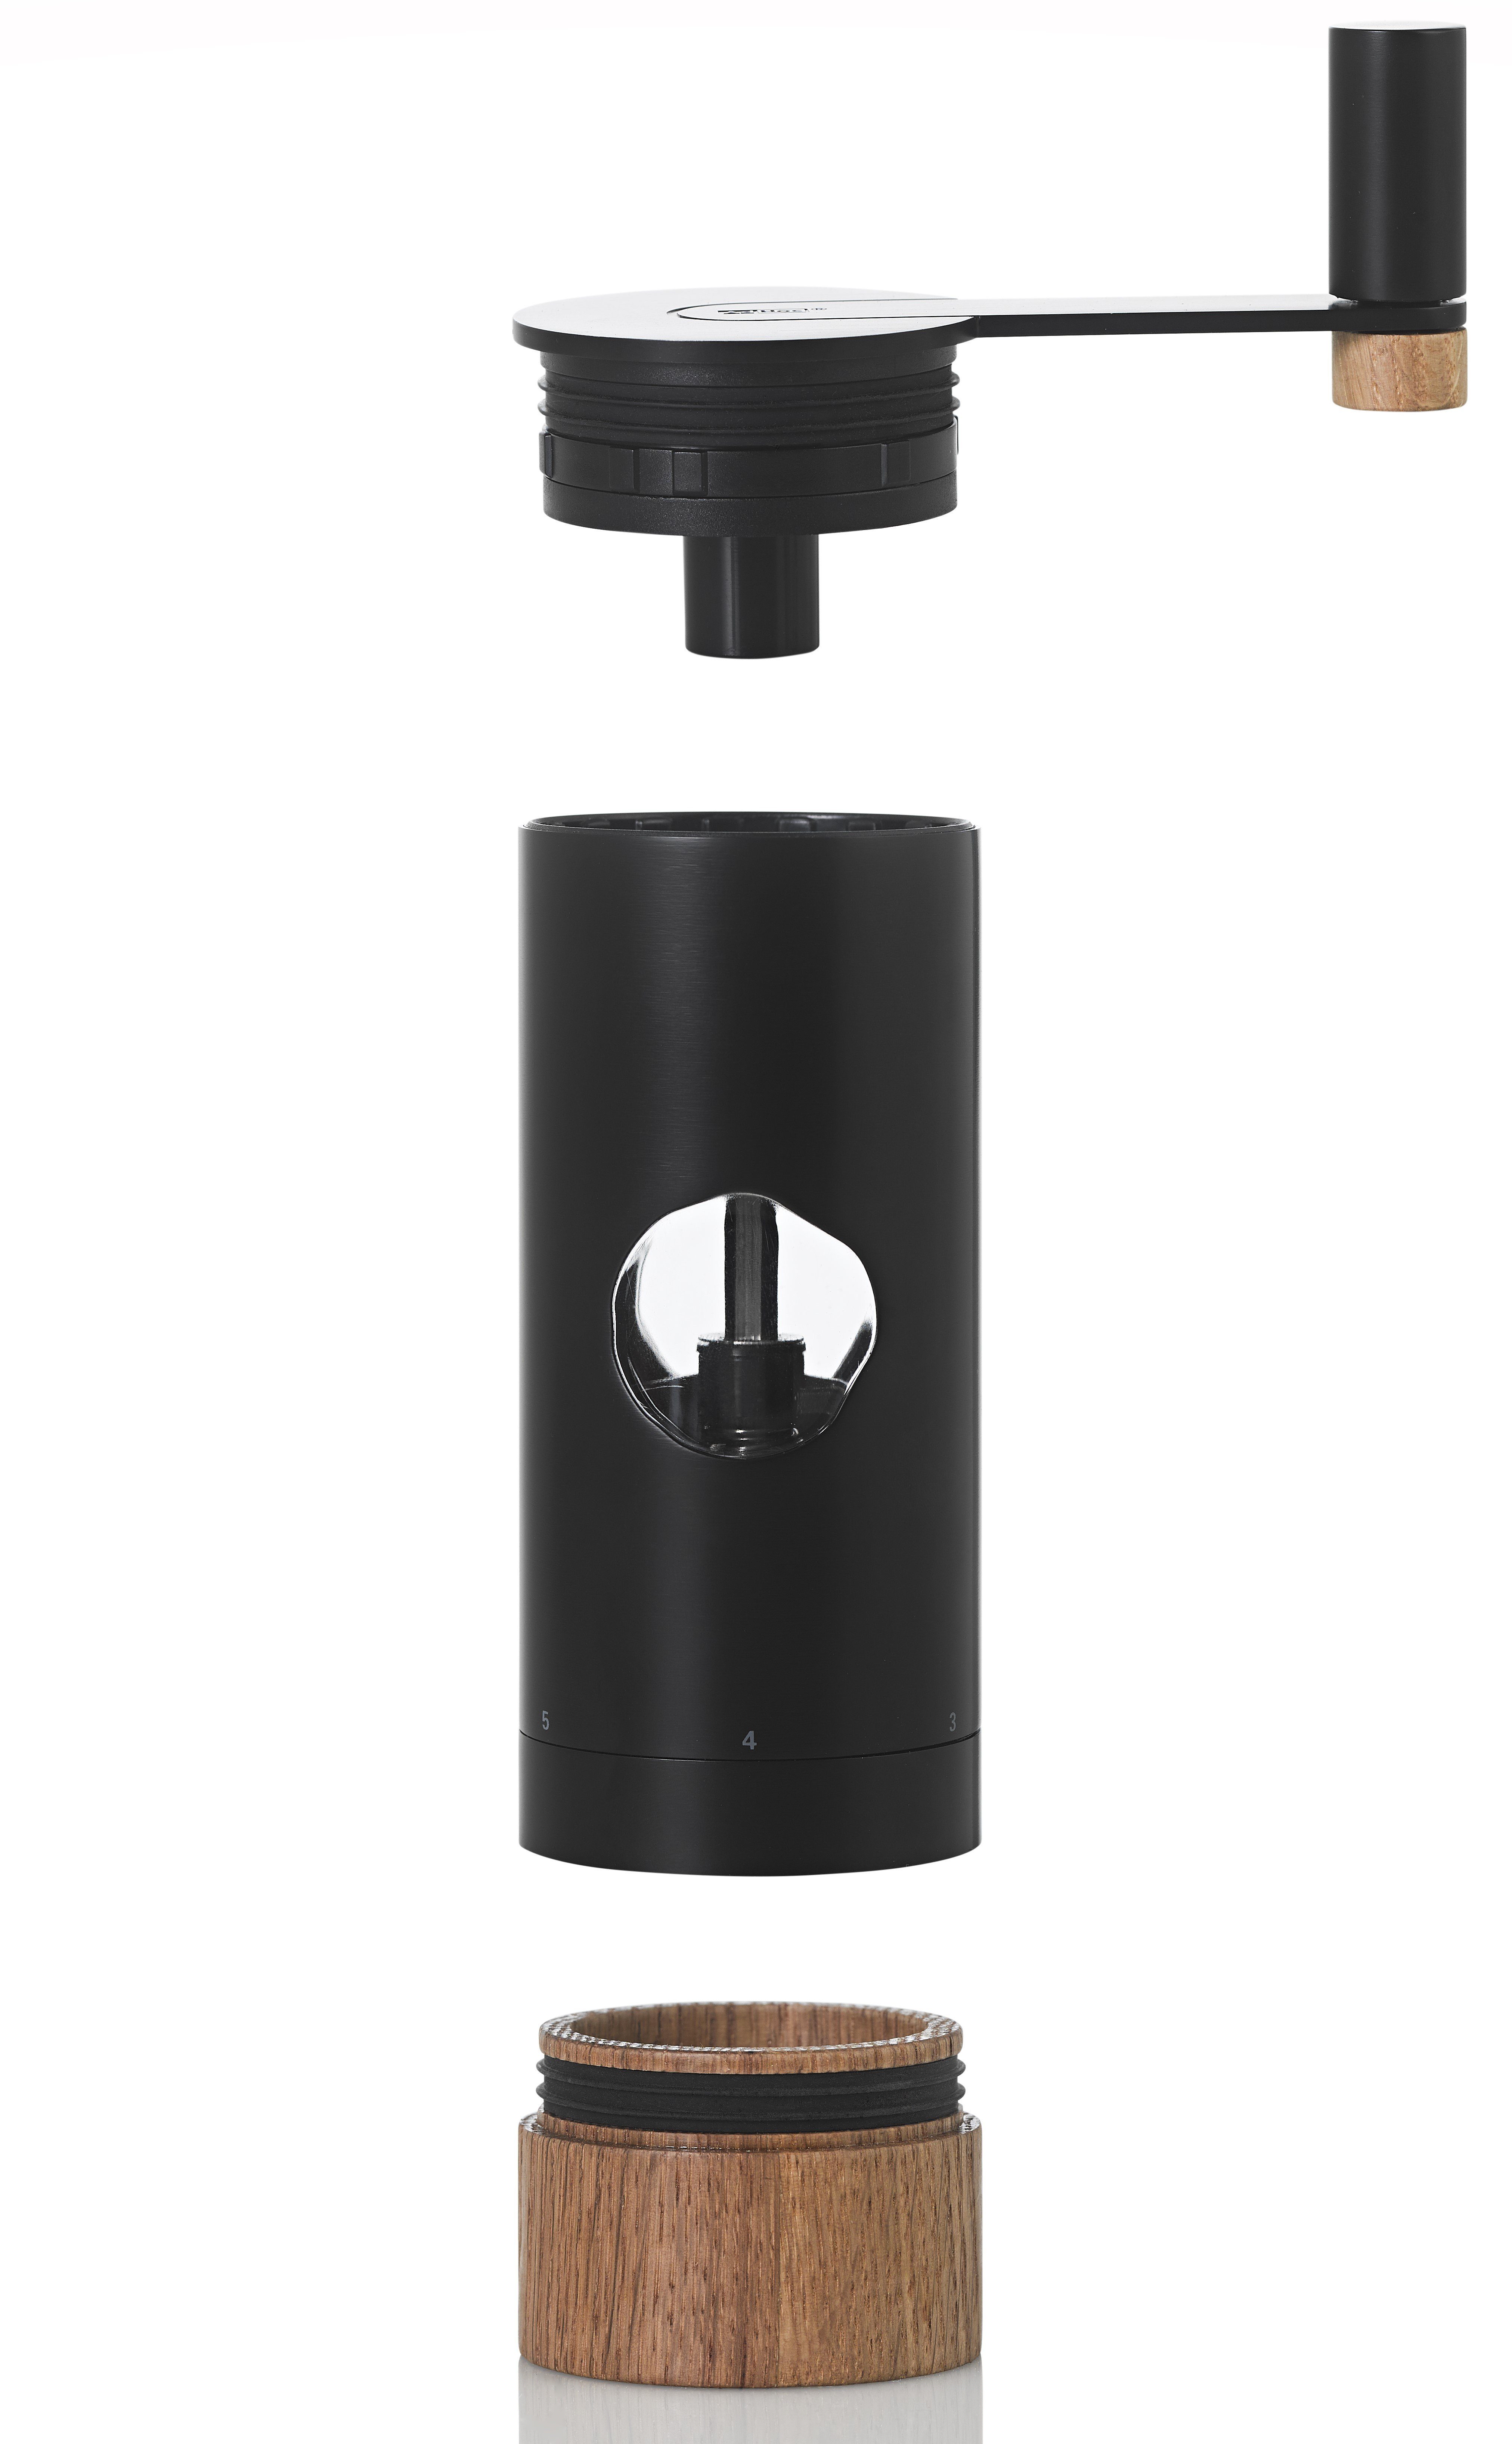 Füllung) Schwarz Salz-/Pfeffermühle PowerMill Getriebemühle AdHoc manuell, (ohne mit Präzisionsfeineinstellung